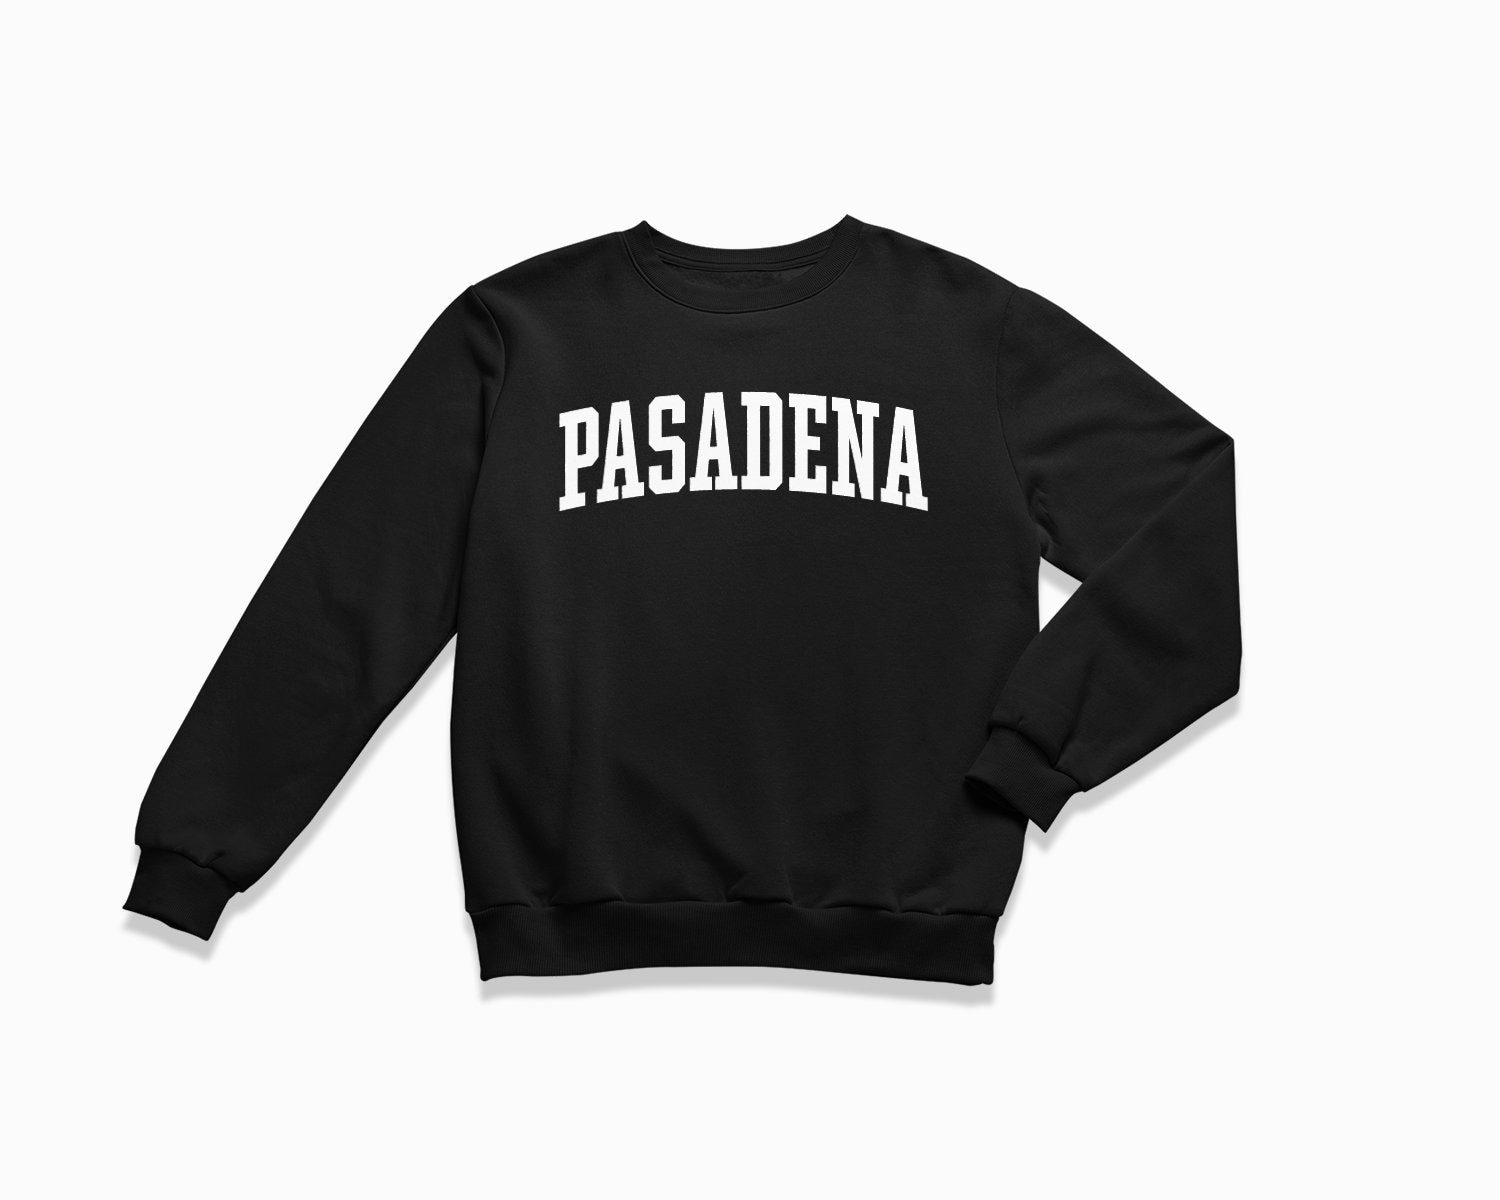 Pasadena Sweatshirt California Crewneck/College Style Sweatshirt Vintage Inspirierter Pullover von HappyNewVintageShop